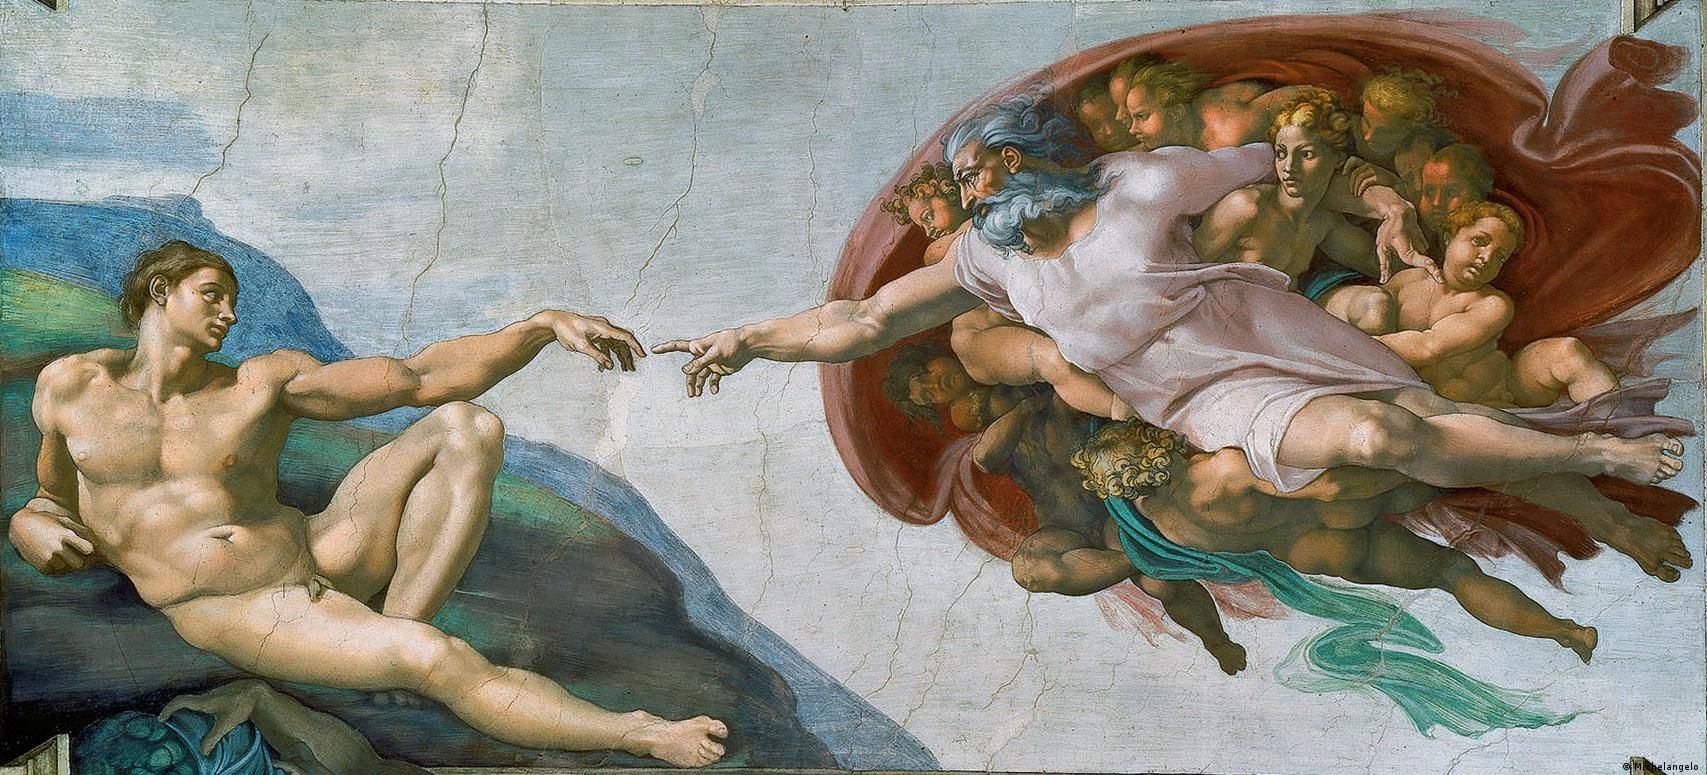 "Сотворение Адама" (ок. 1511) - фреска Микеланджело в Сикстинской капелле в Ватикане